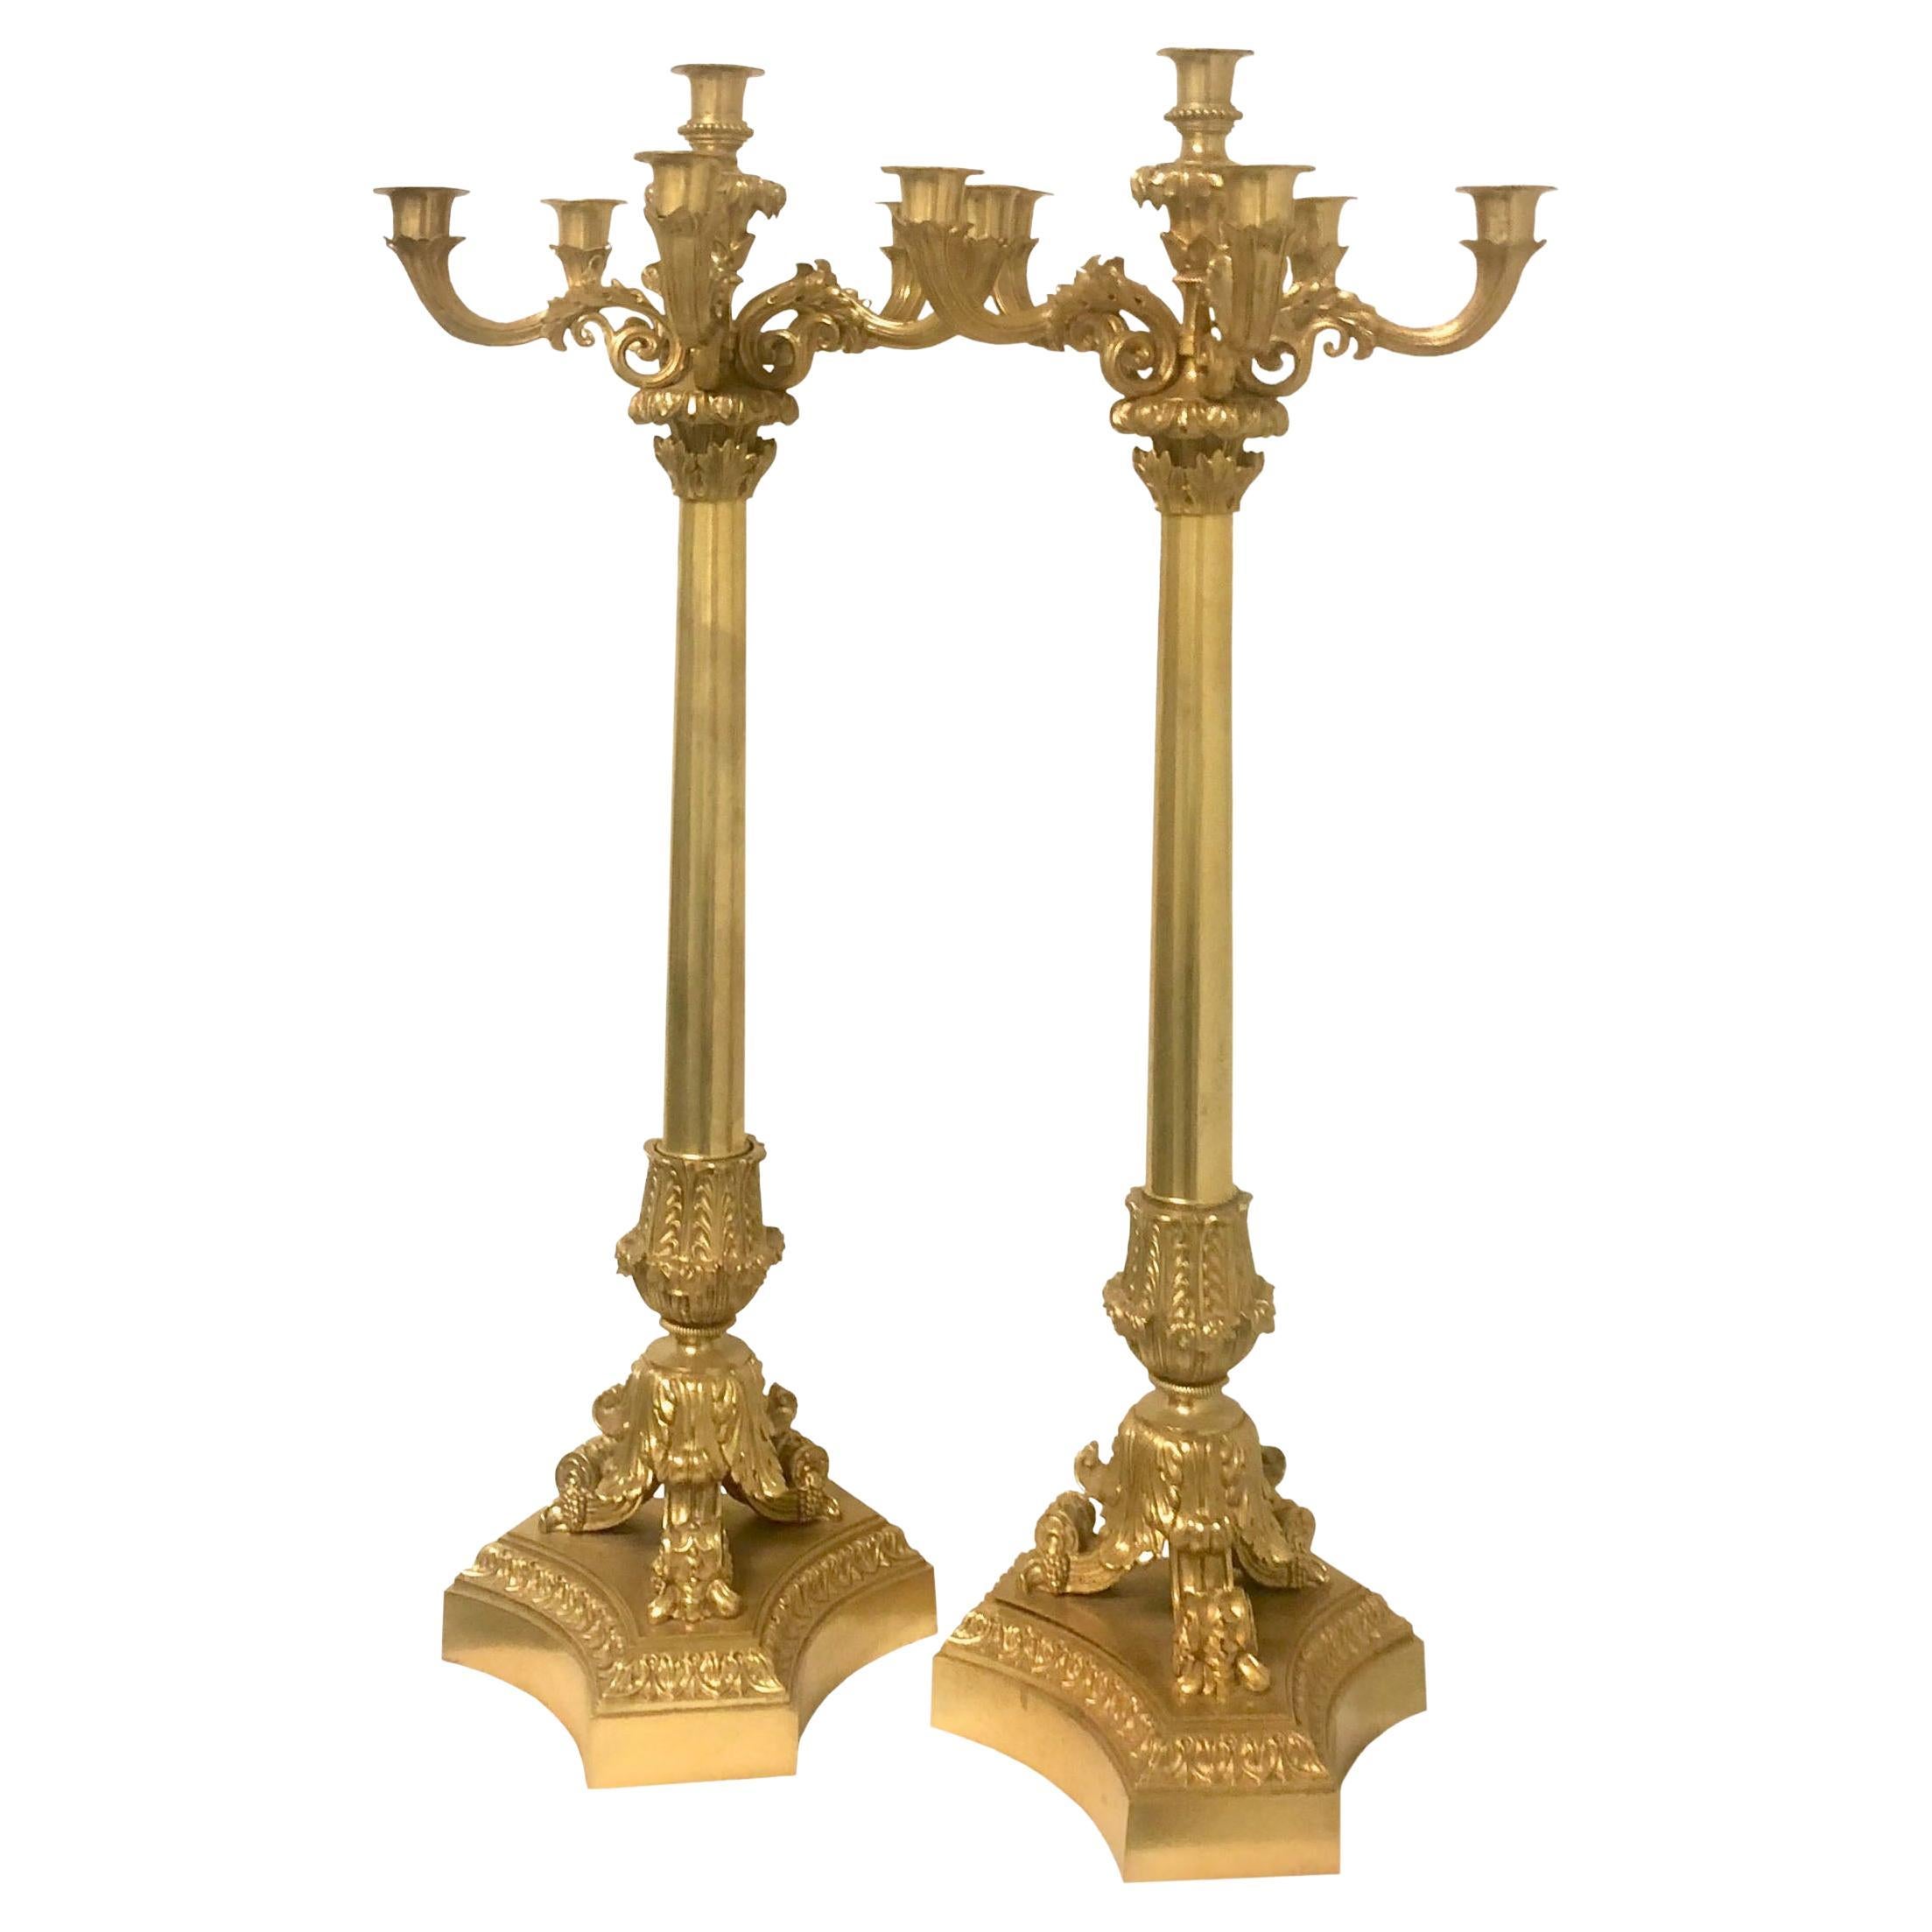 Candélabre en bronze doré de style néoclassique